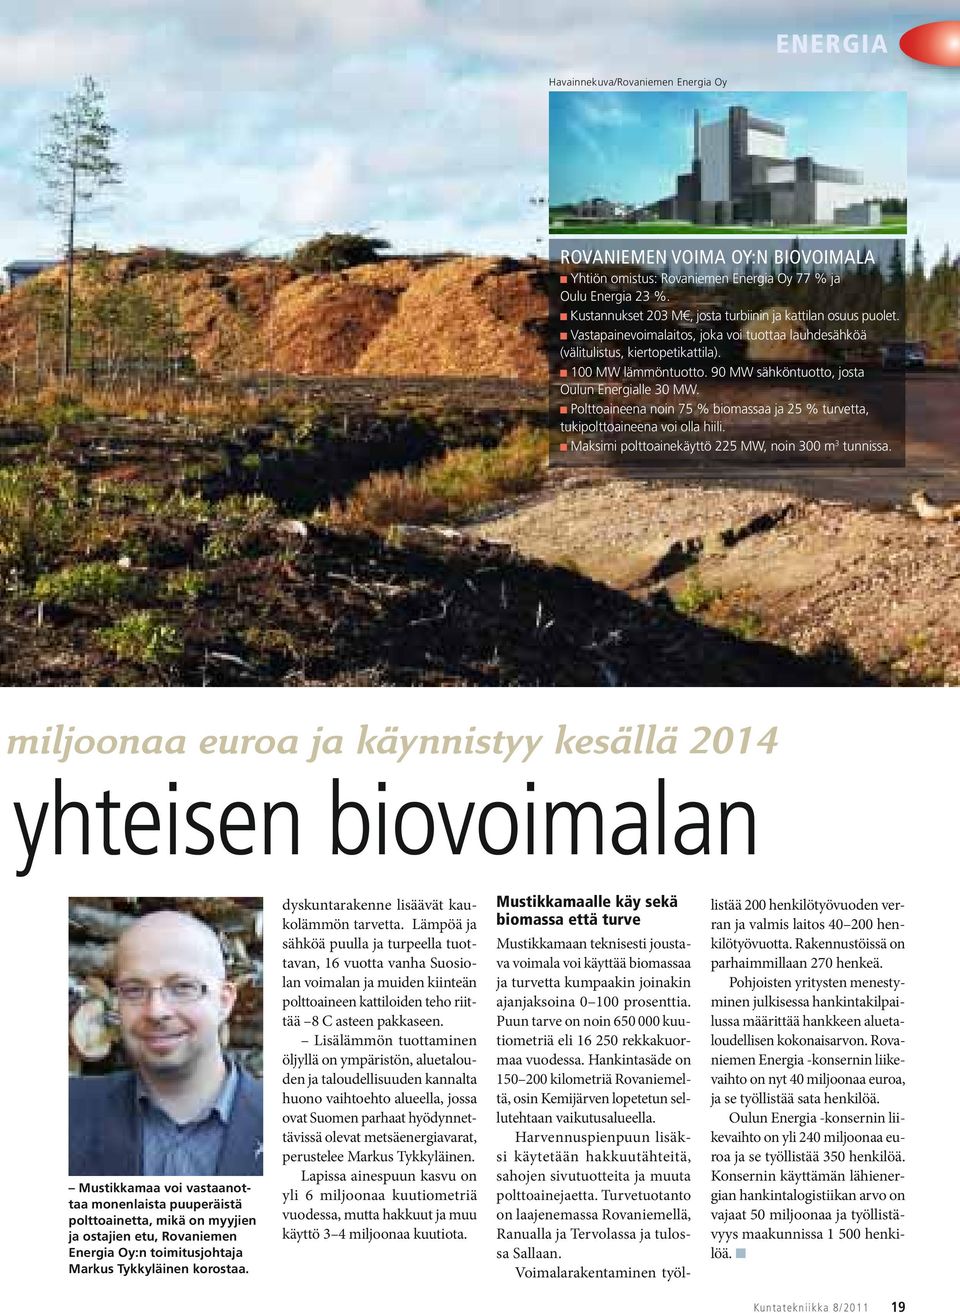 90 MW sähköntuotto, josta Oulun Energialle 30 MW. Polttoaineena noin 75 % biomassaa ja 25 % turvetta, tukipolttoaineena voi olla hiili. Maksimi polttoainekäyttö 225 MW, noin 300 m 3 tunnissa.